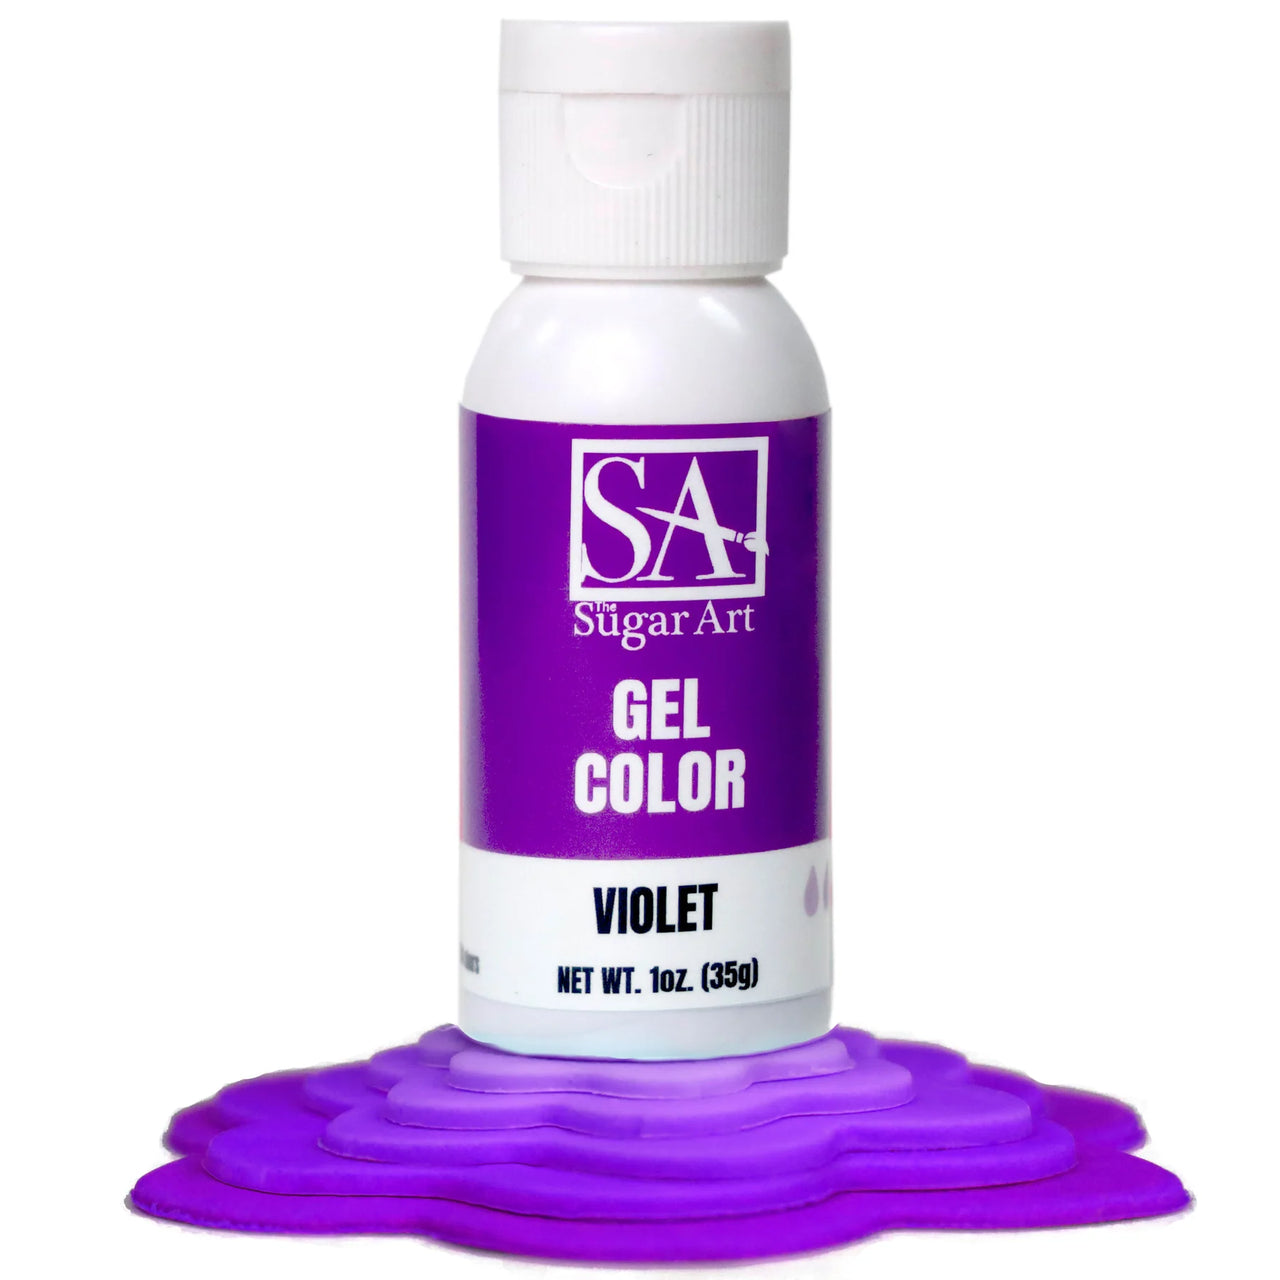 Violet Gel Color 1oz (35g)